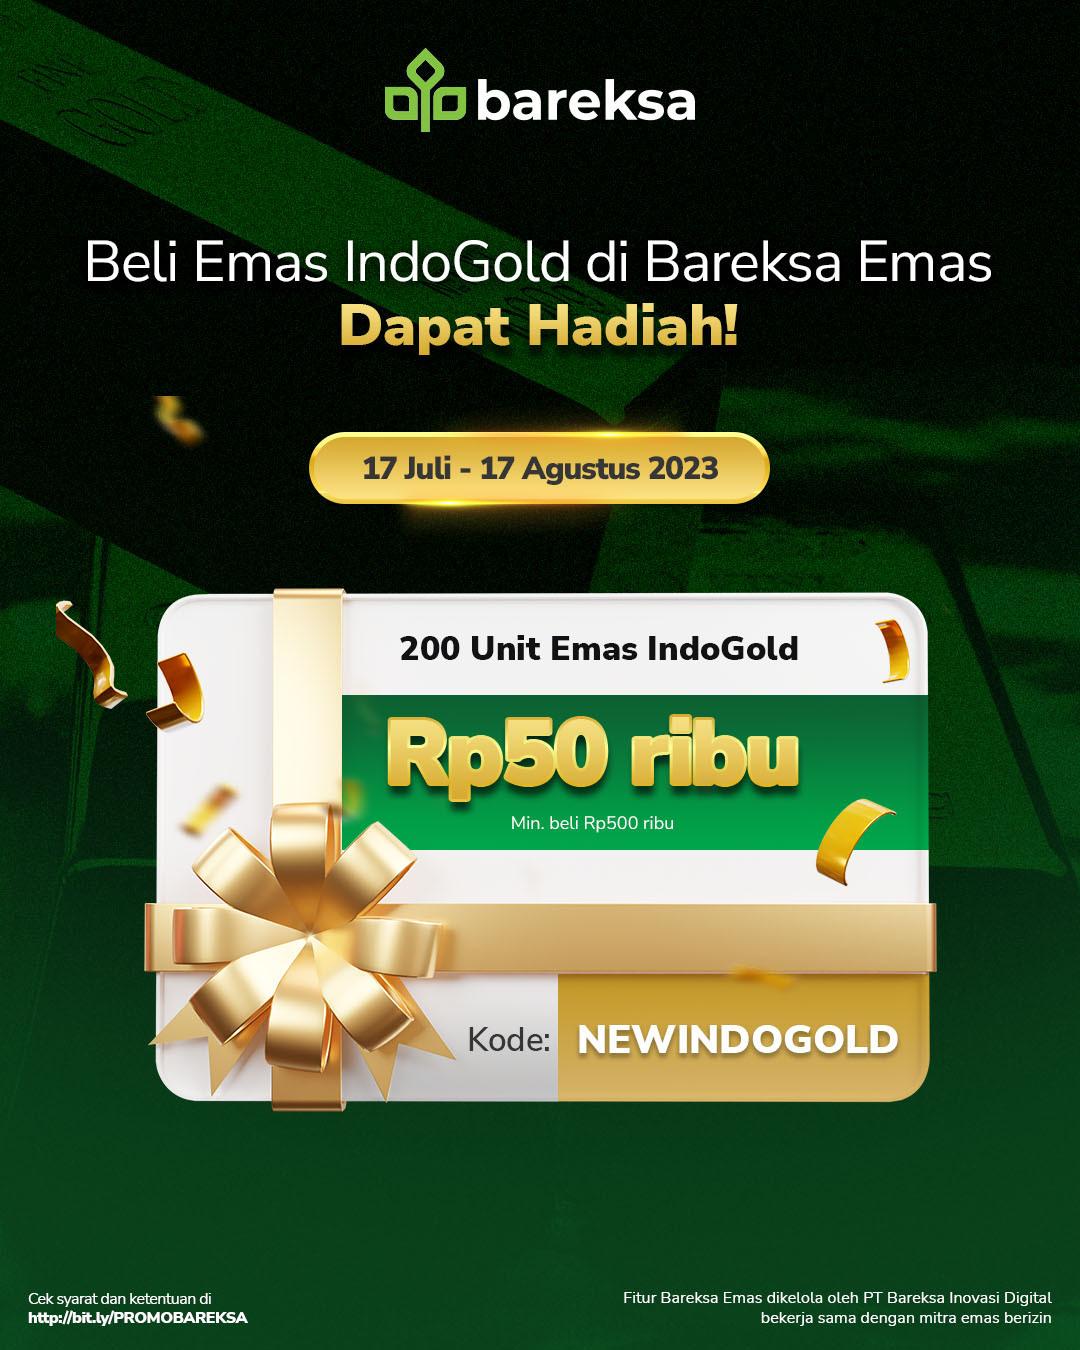 Selamat! Ini Pemenang Promo Relaunching Indogold Berhadiah Emas Senilai Rp50 Ribu